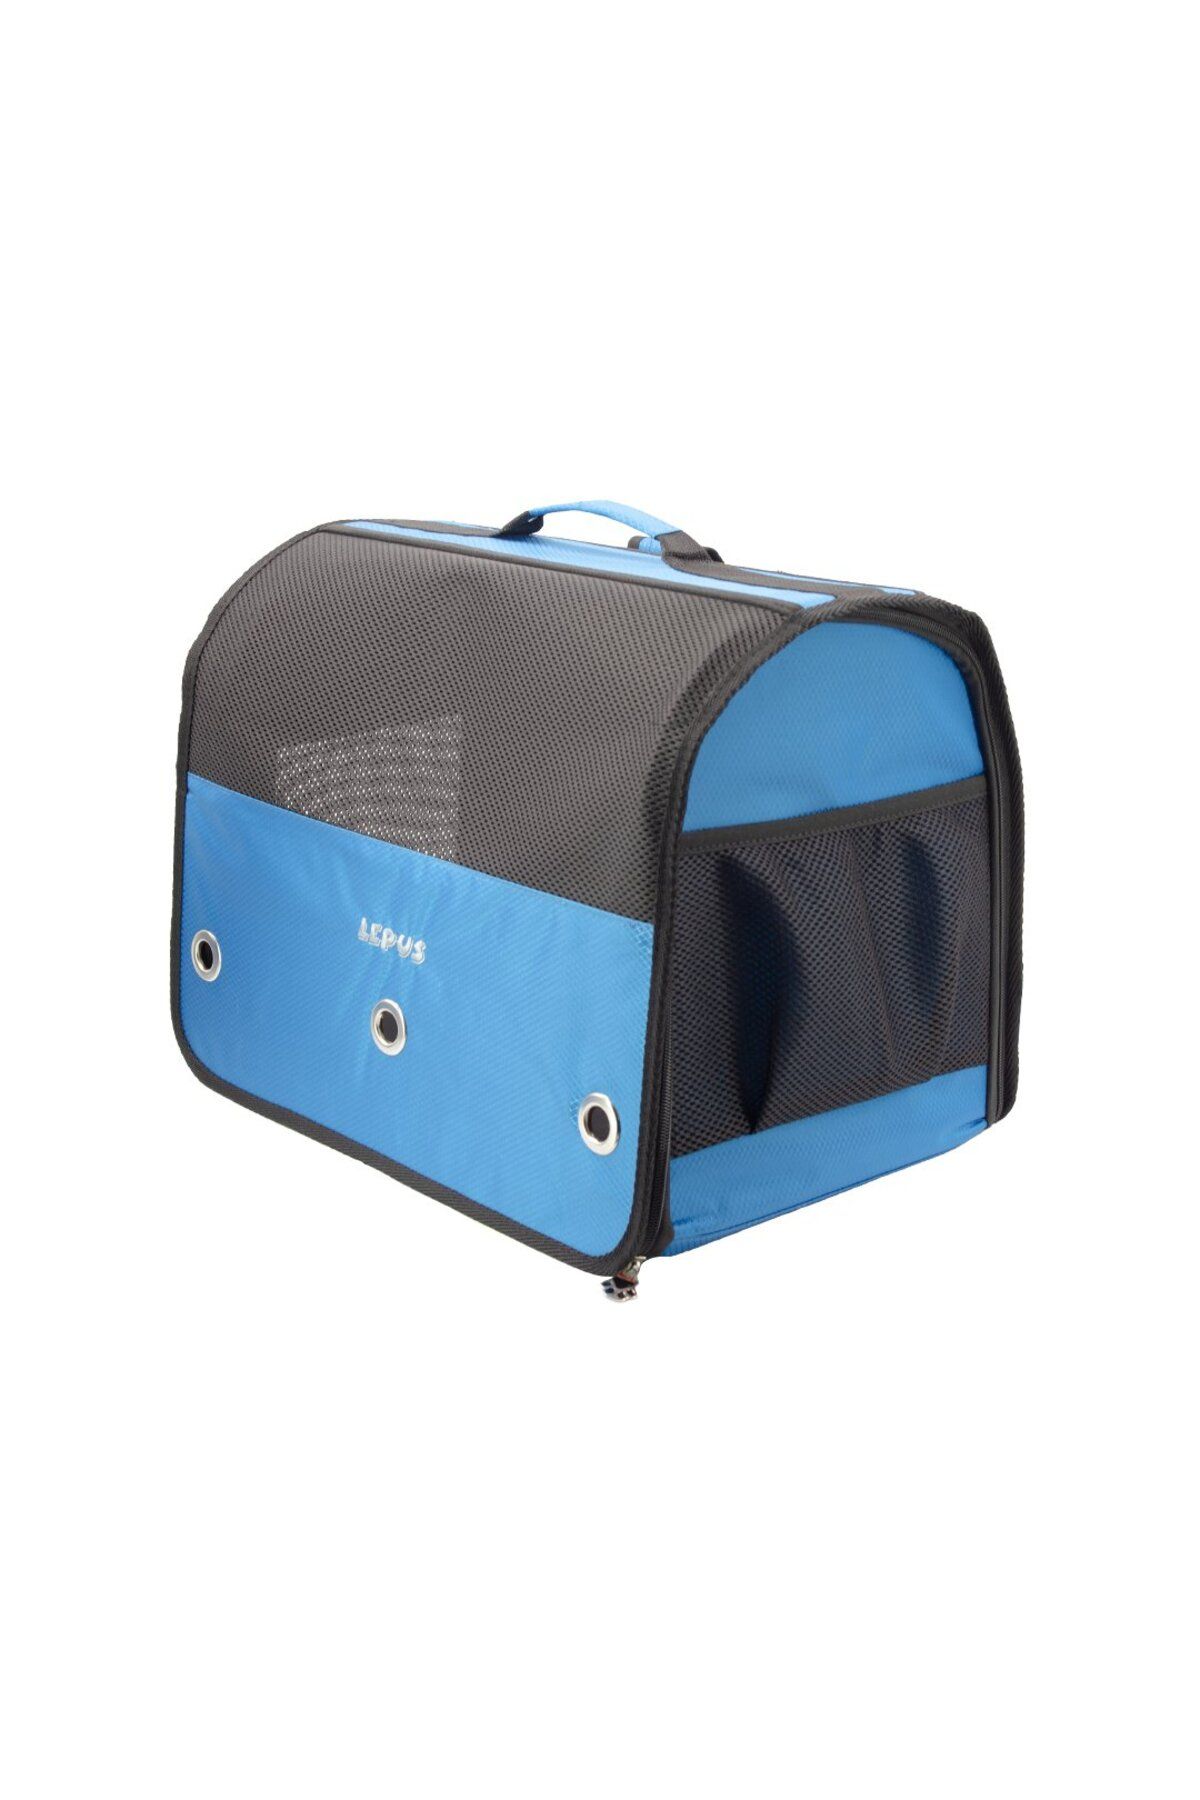 Lepus Kedi ve Köpek taşıma çantası (Cool Backpack)